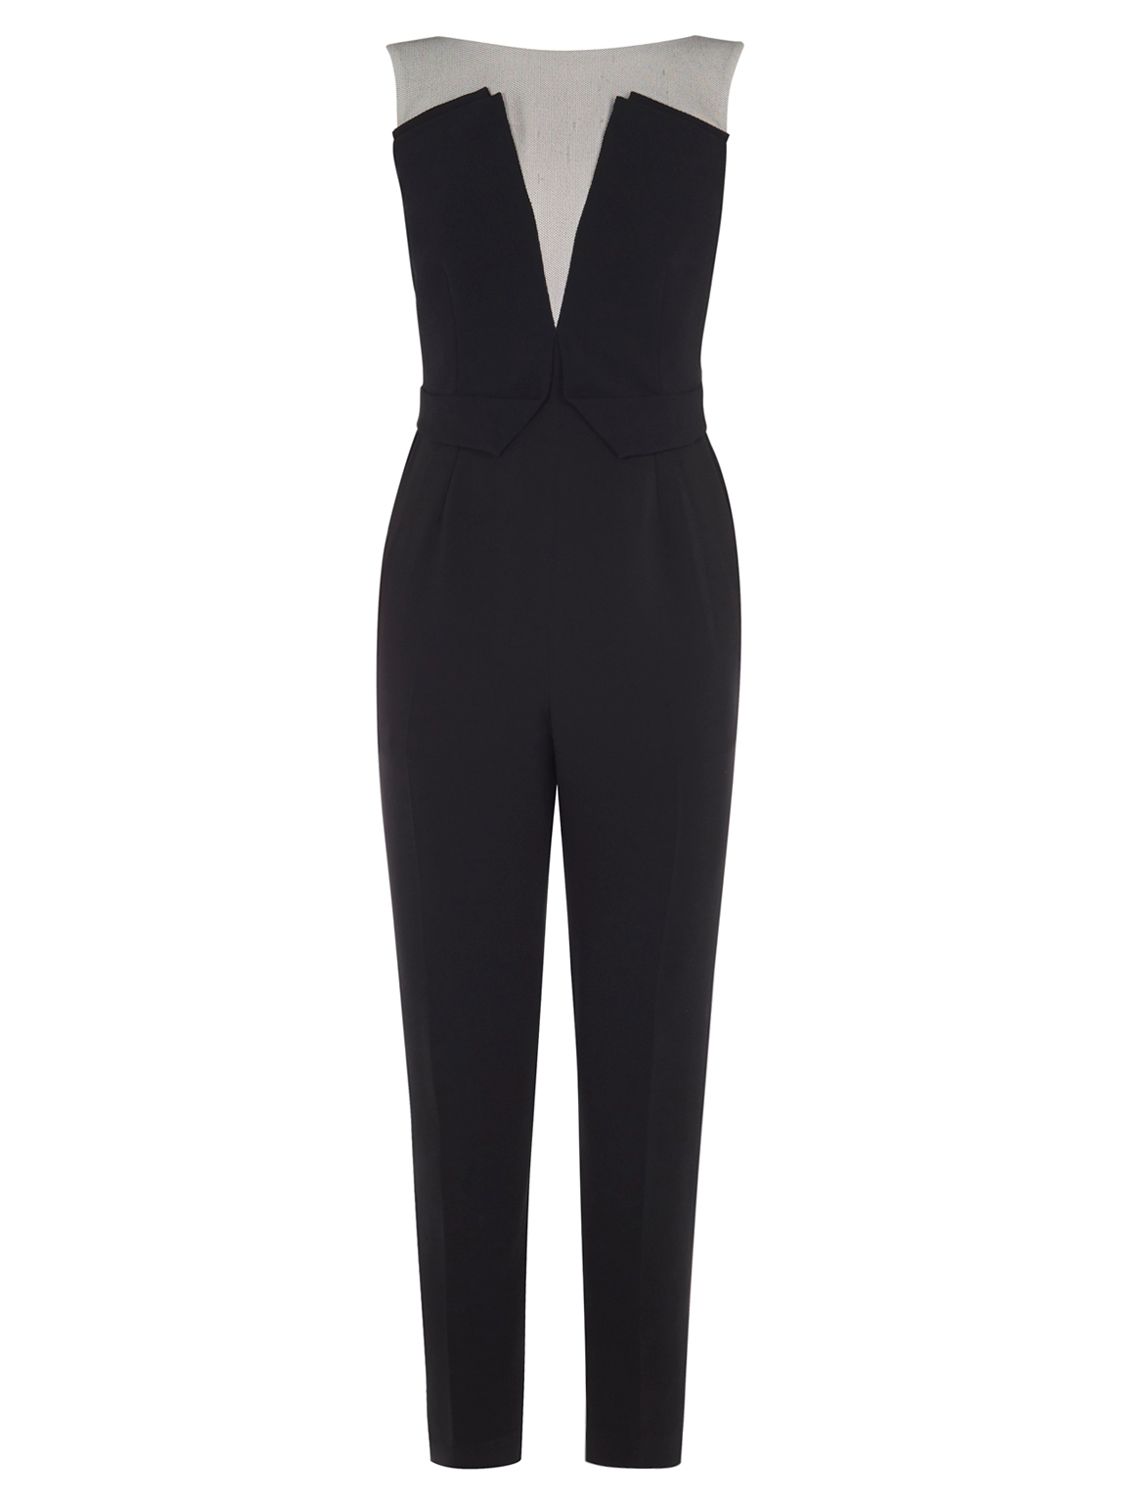 Karen Millen Graphic Panelled Jumpsuit, Black/White